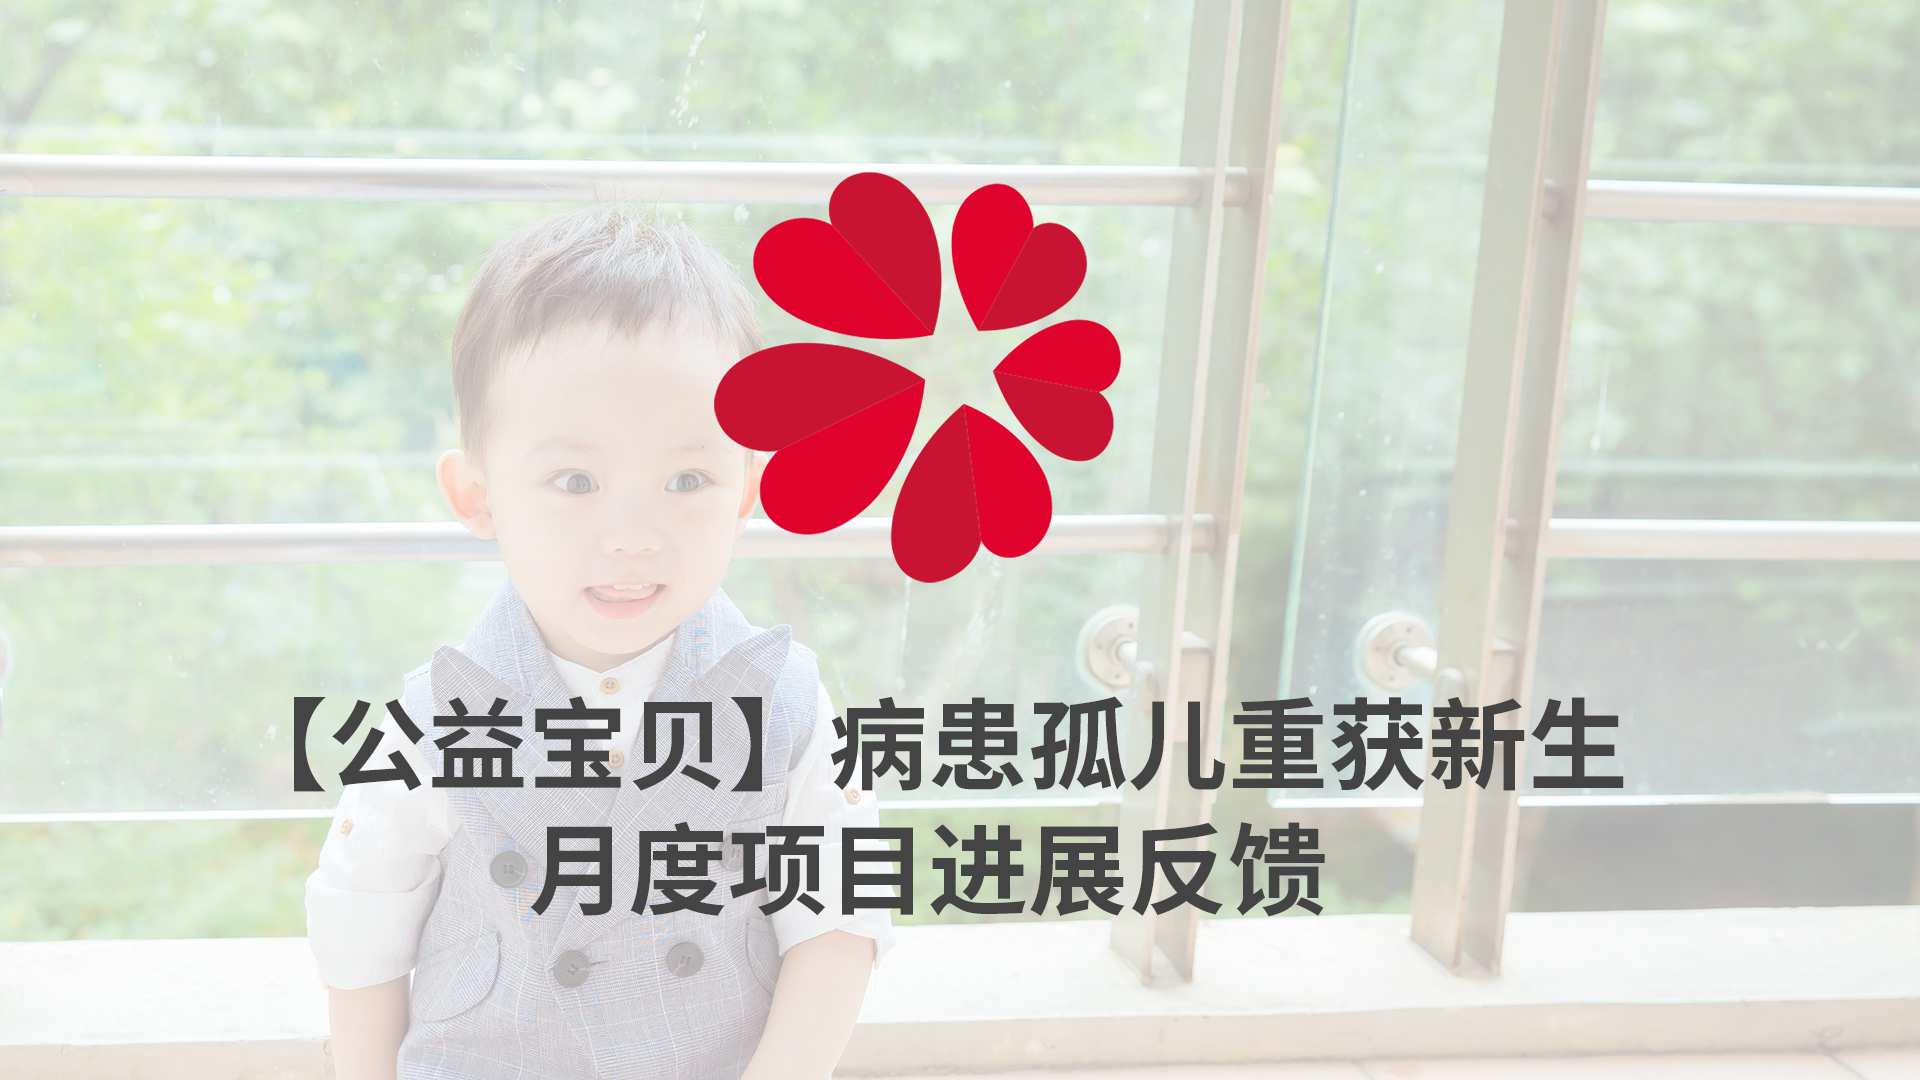 【XIN 益佰项目】病患孤儿重获新生 2023 年 5 月项目进展反馈